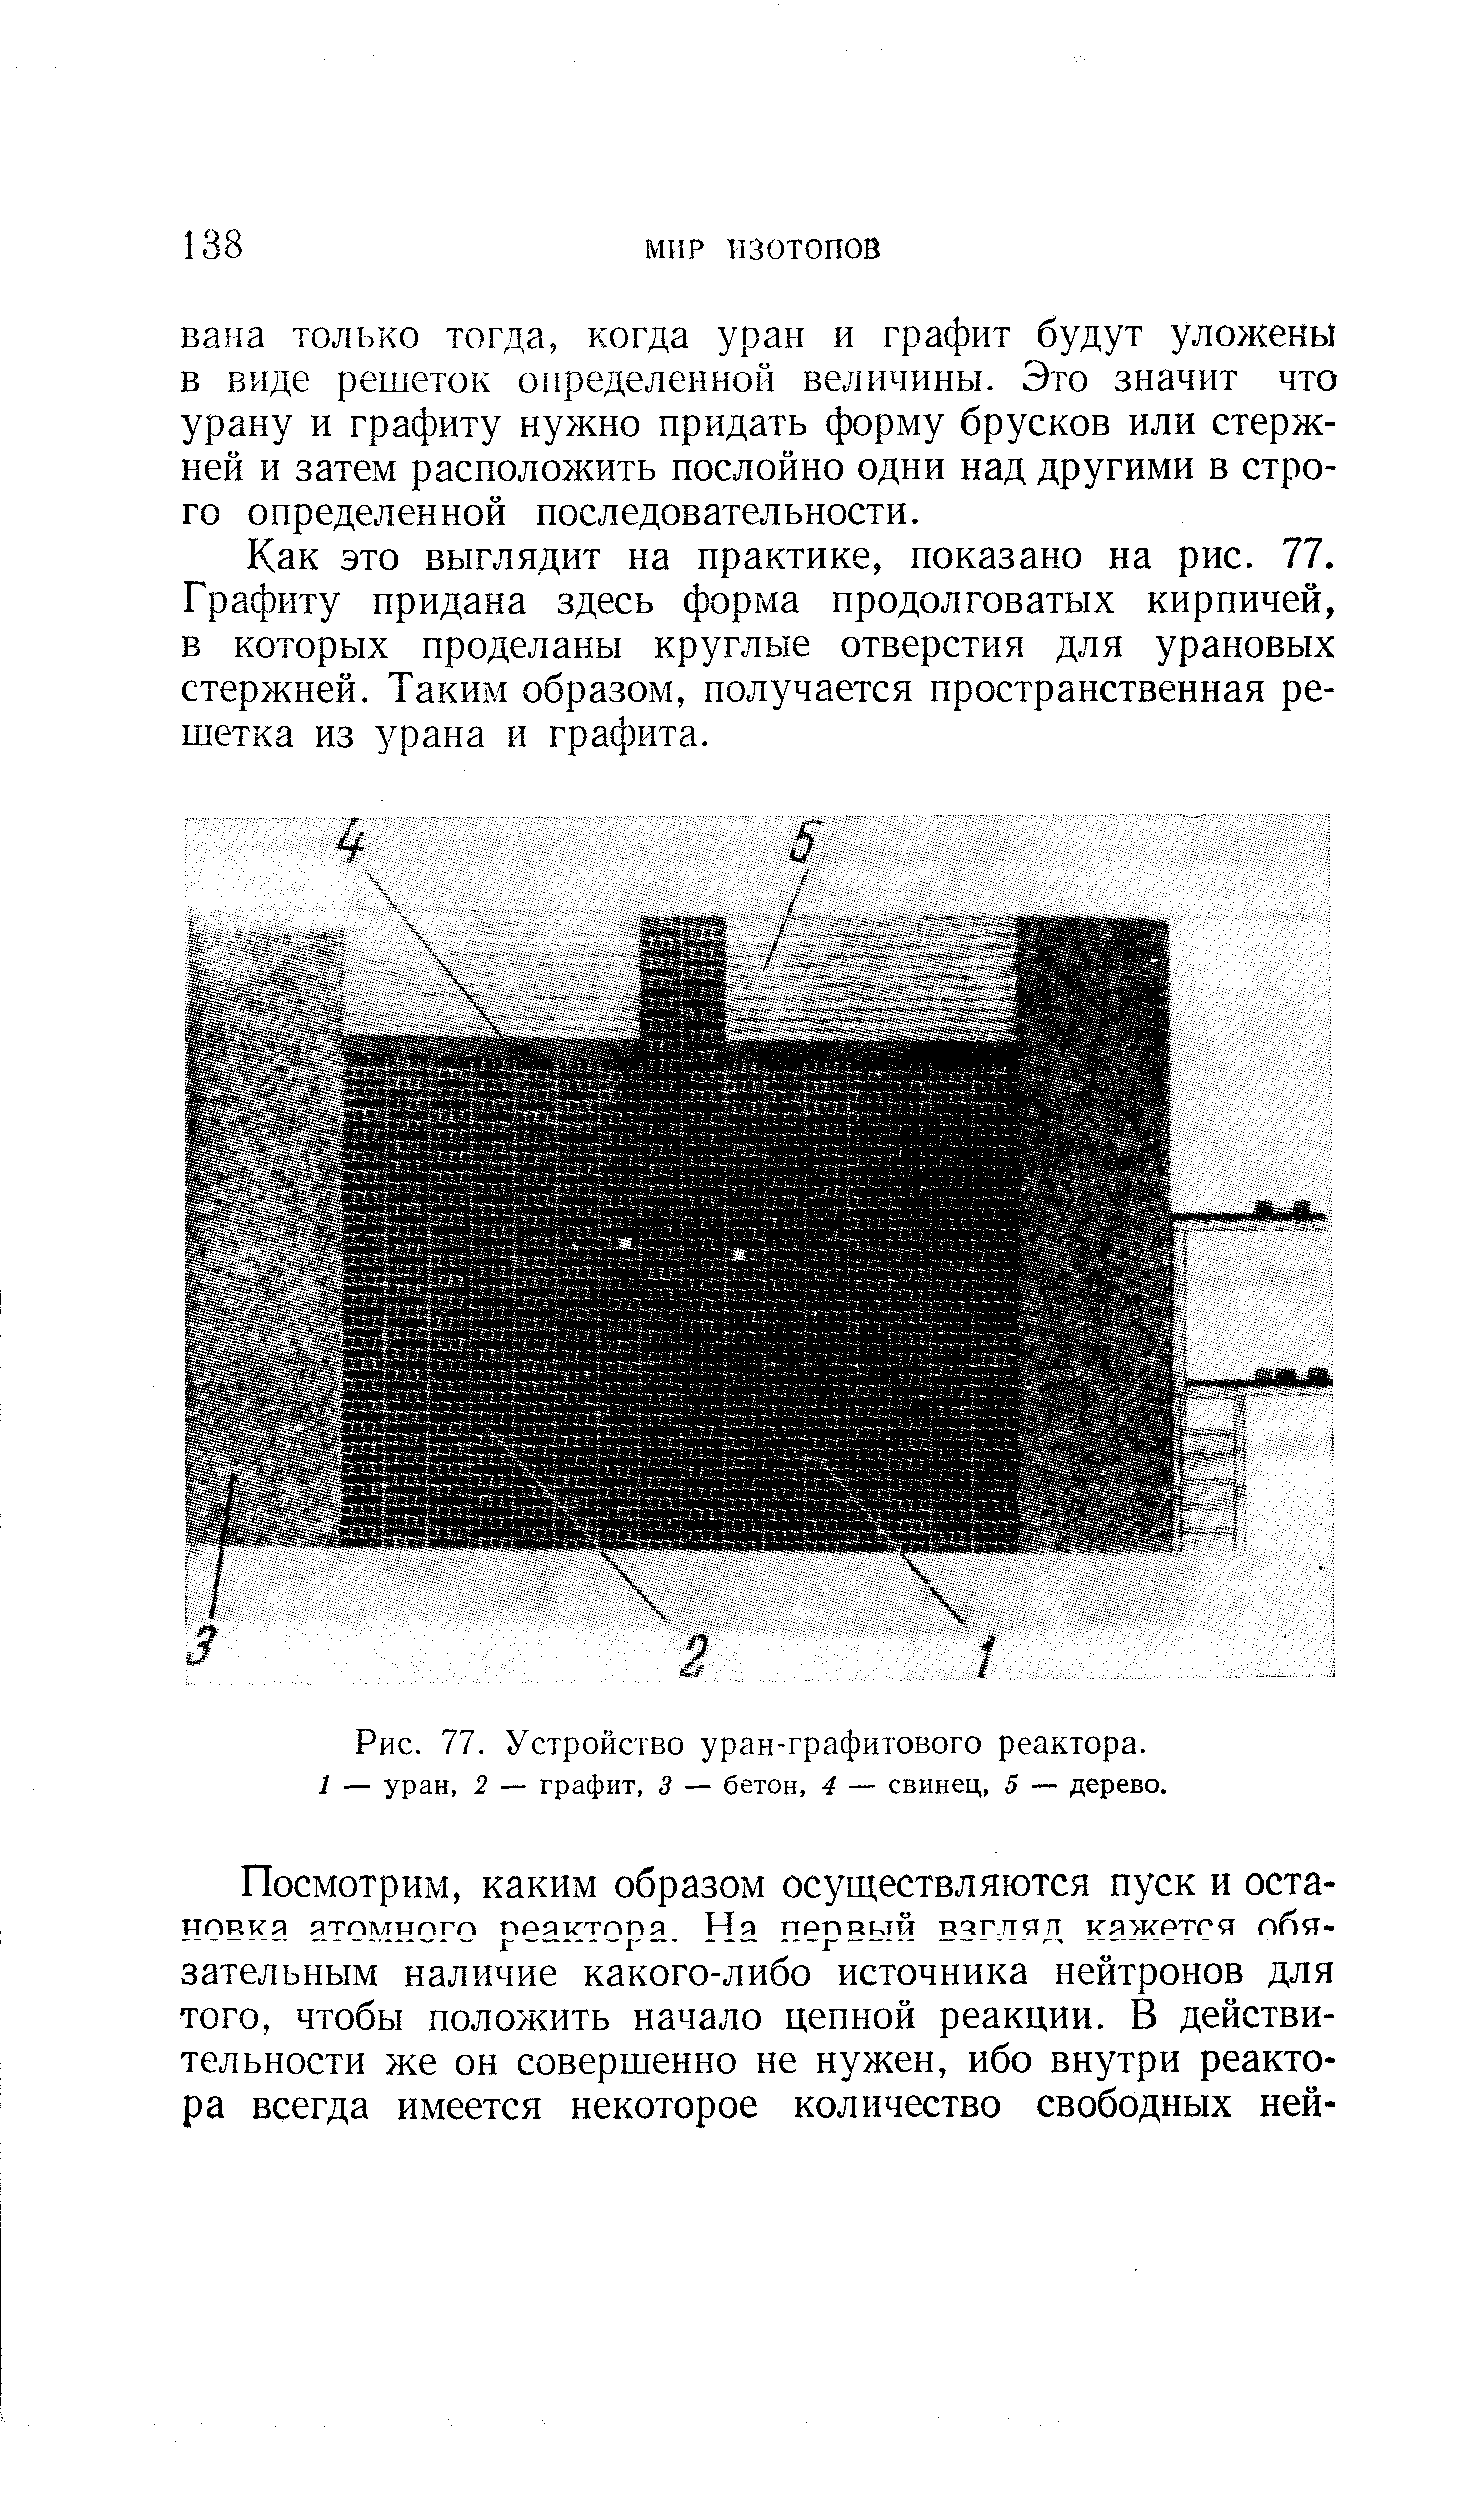 Рис. 77. Устройство уран-графитового реактора.
